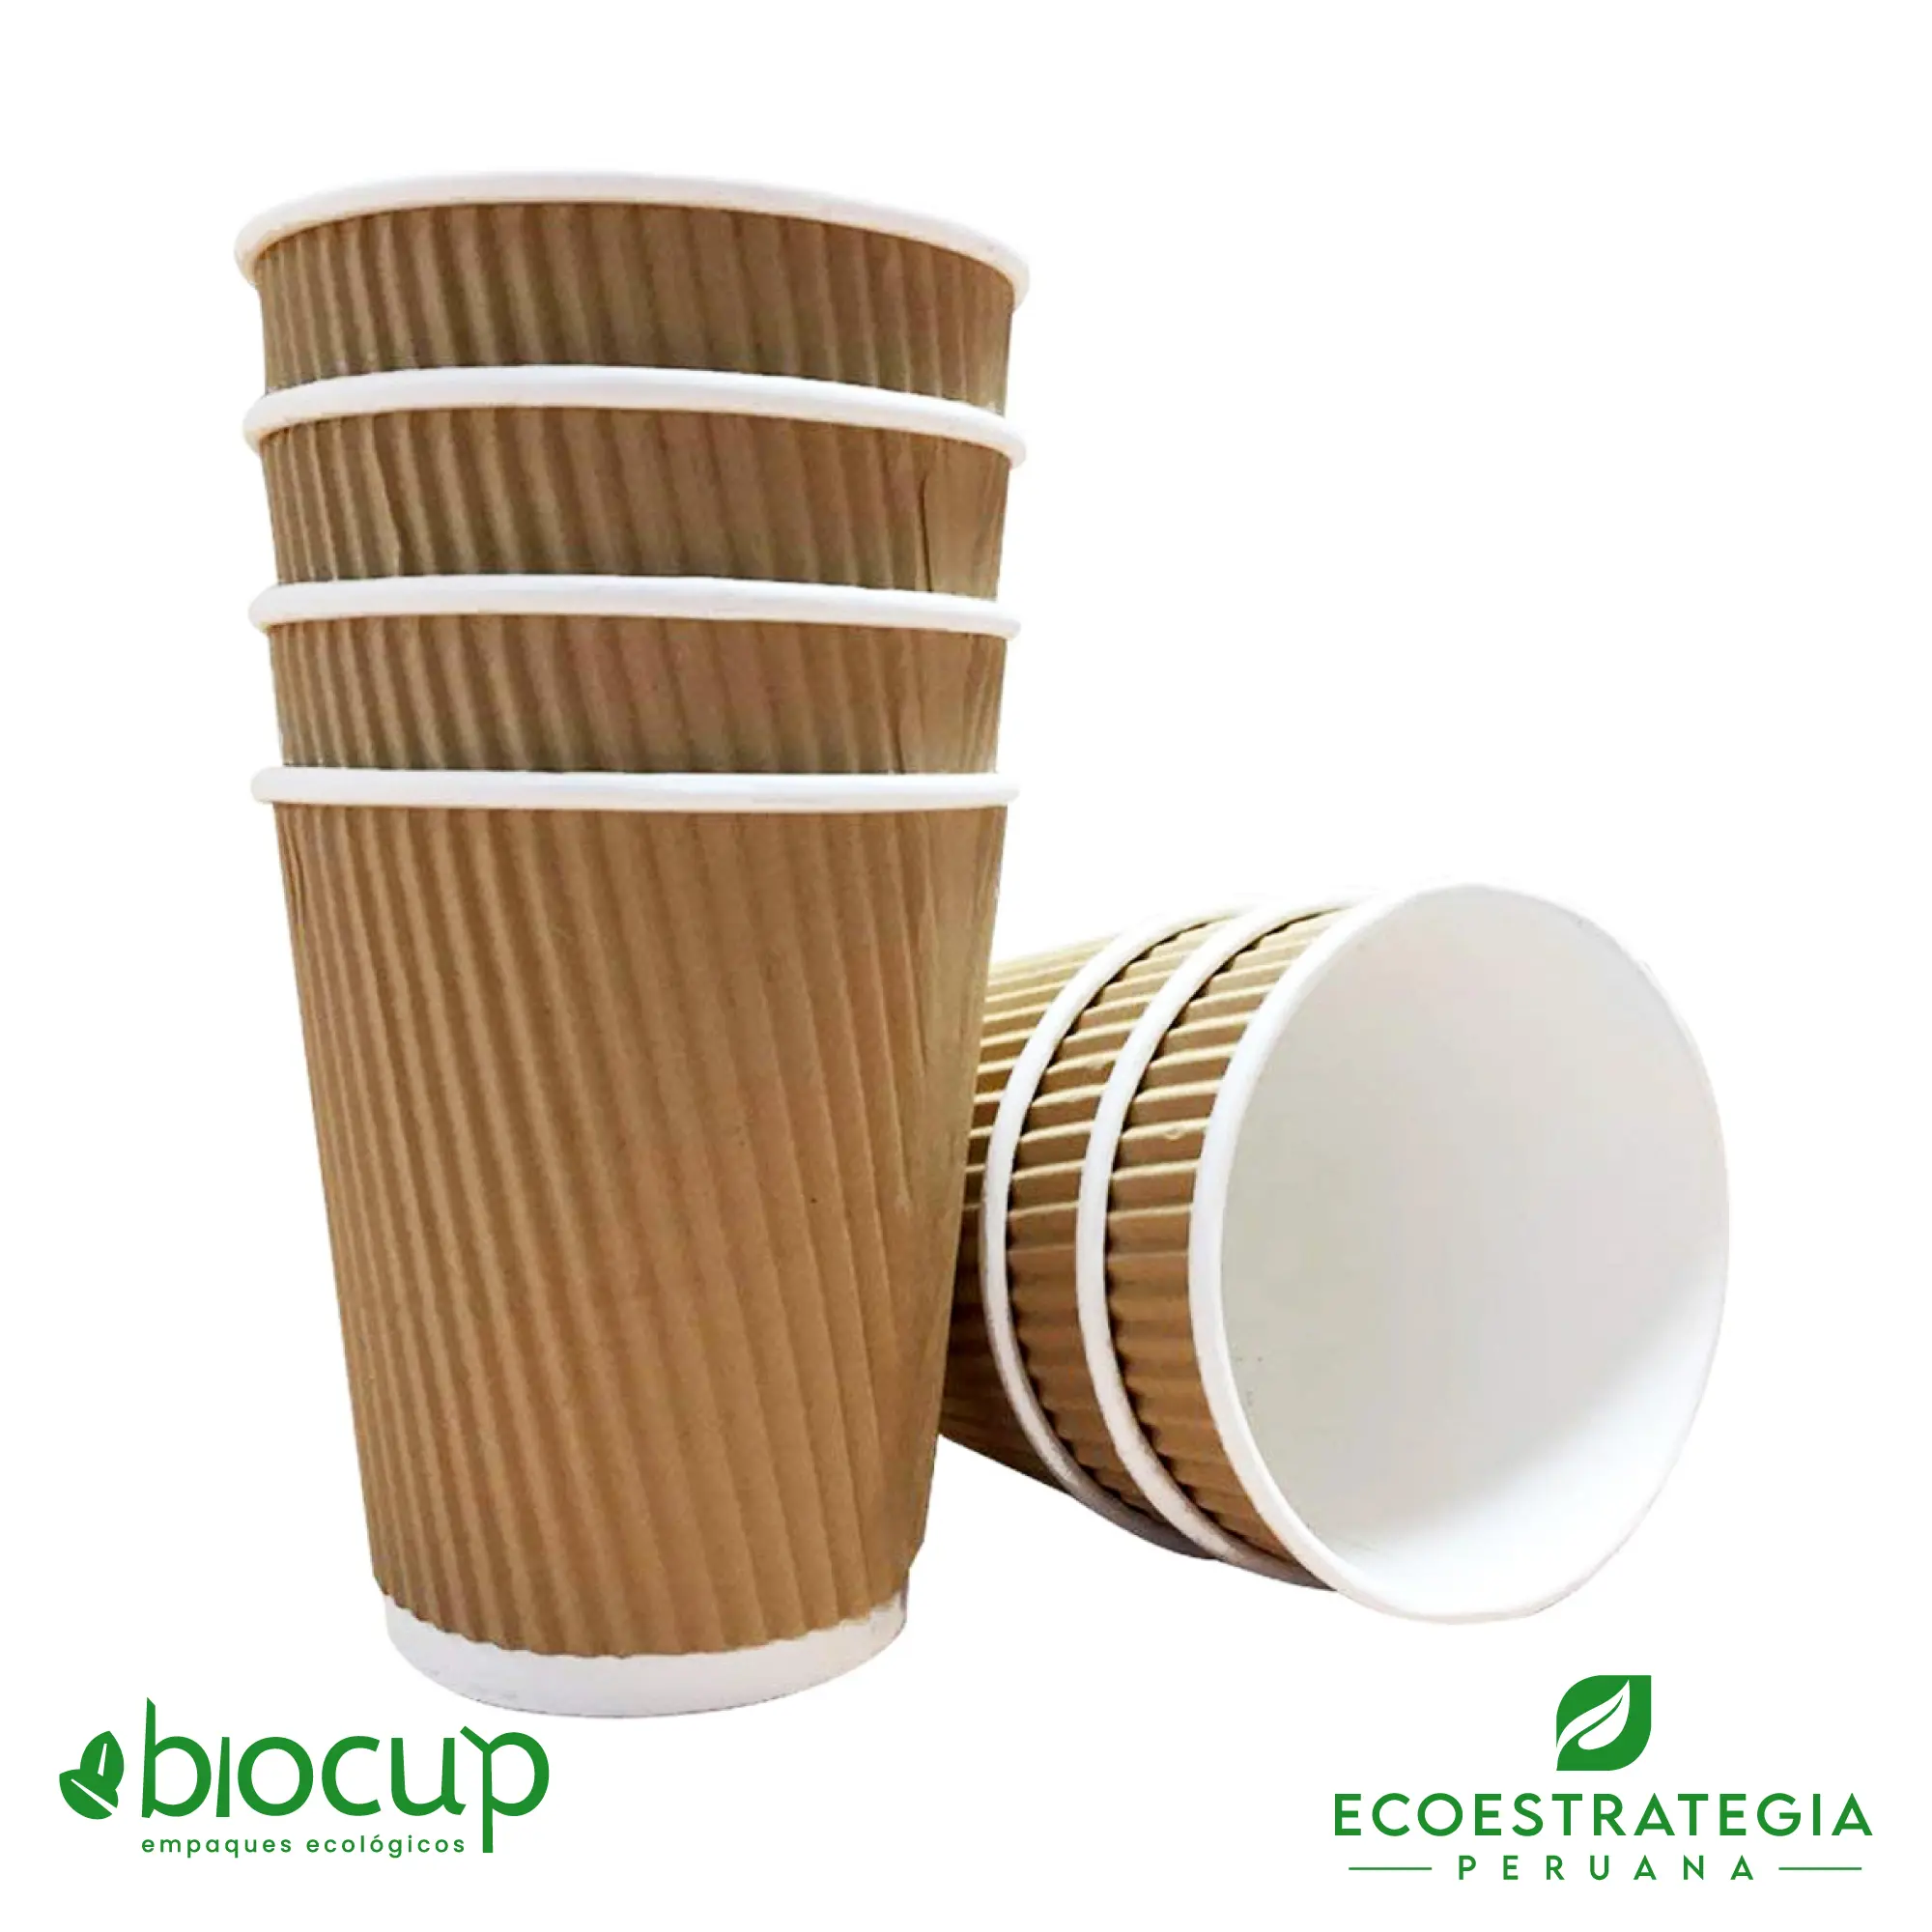 Este vaso corrugado de 12 oz es un producto de materiales biodegradables, hecho a base de fibra de bambú. Cotiza tus vasos para bebidas frías o calientes